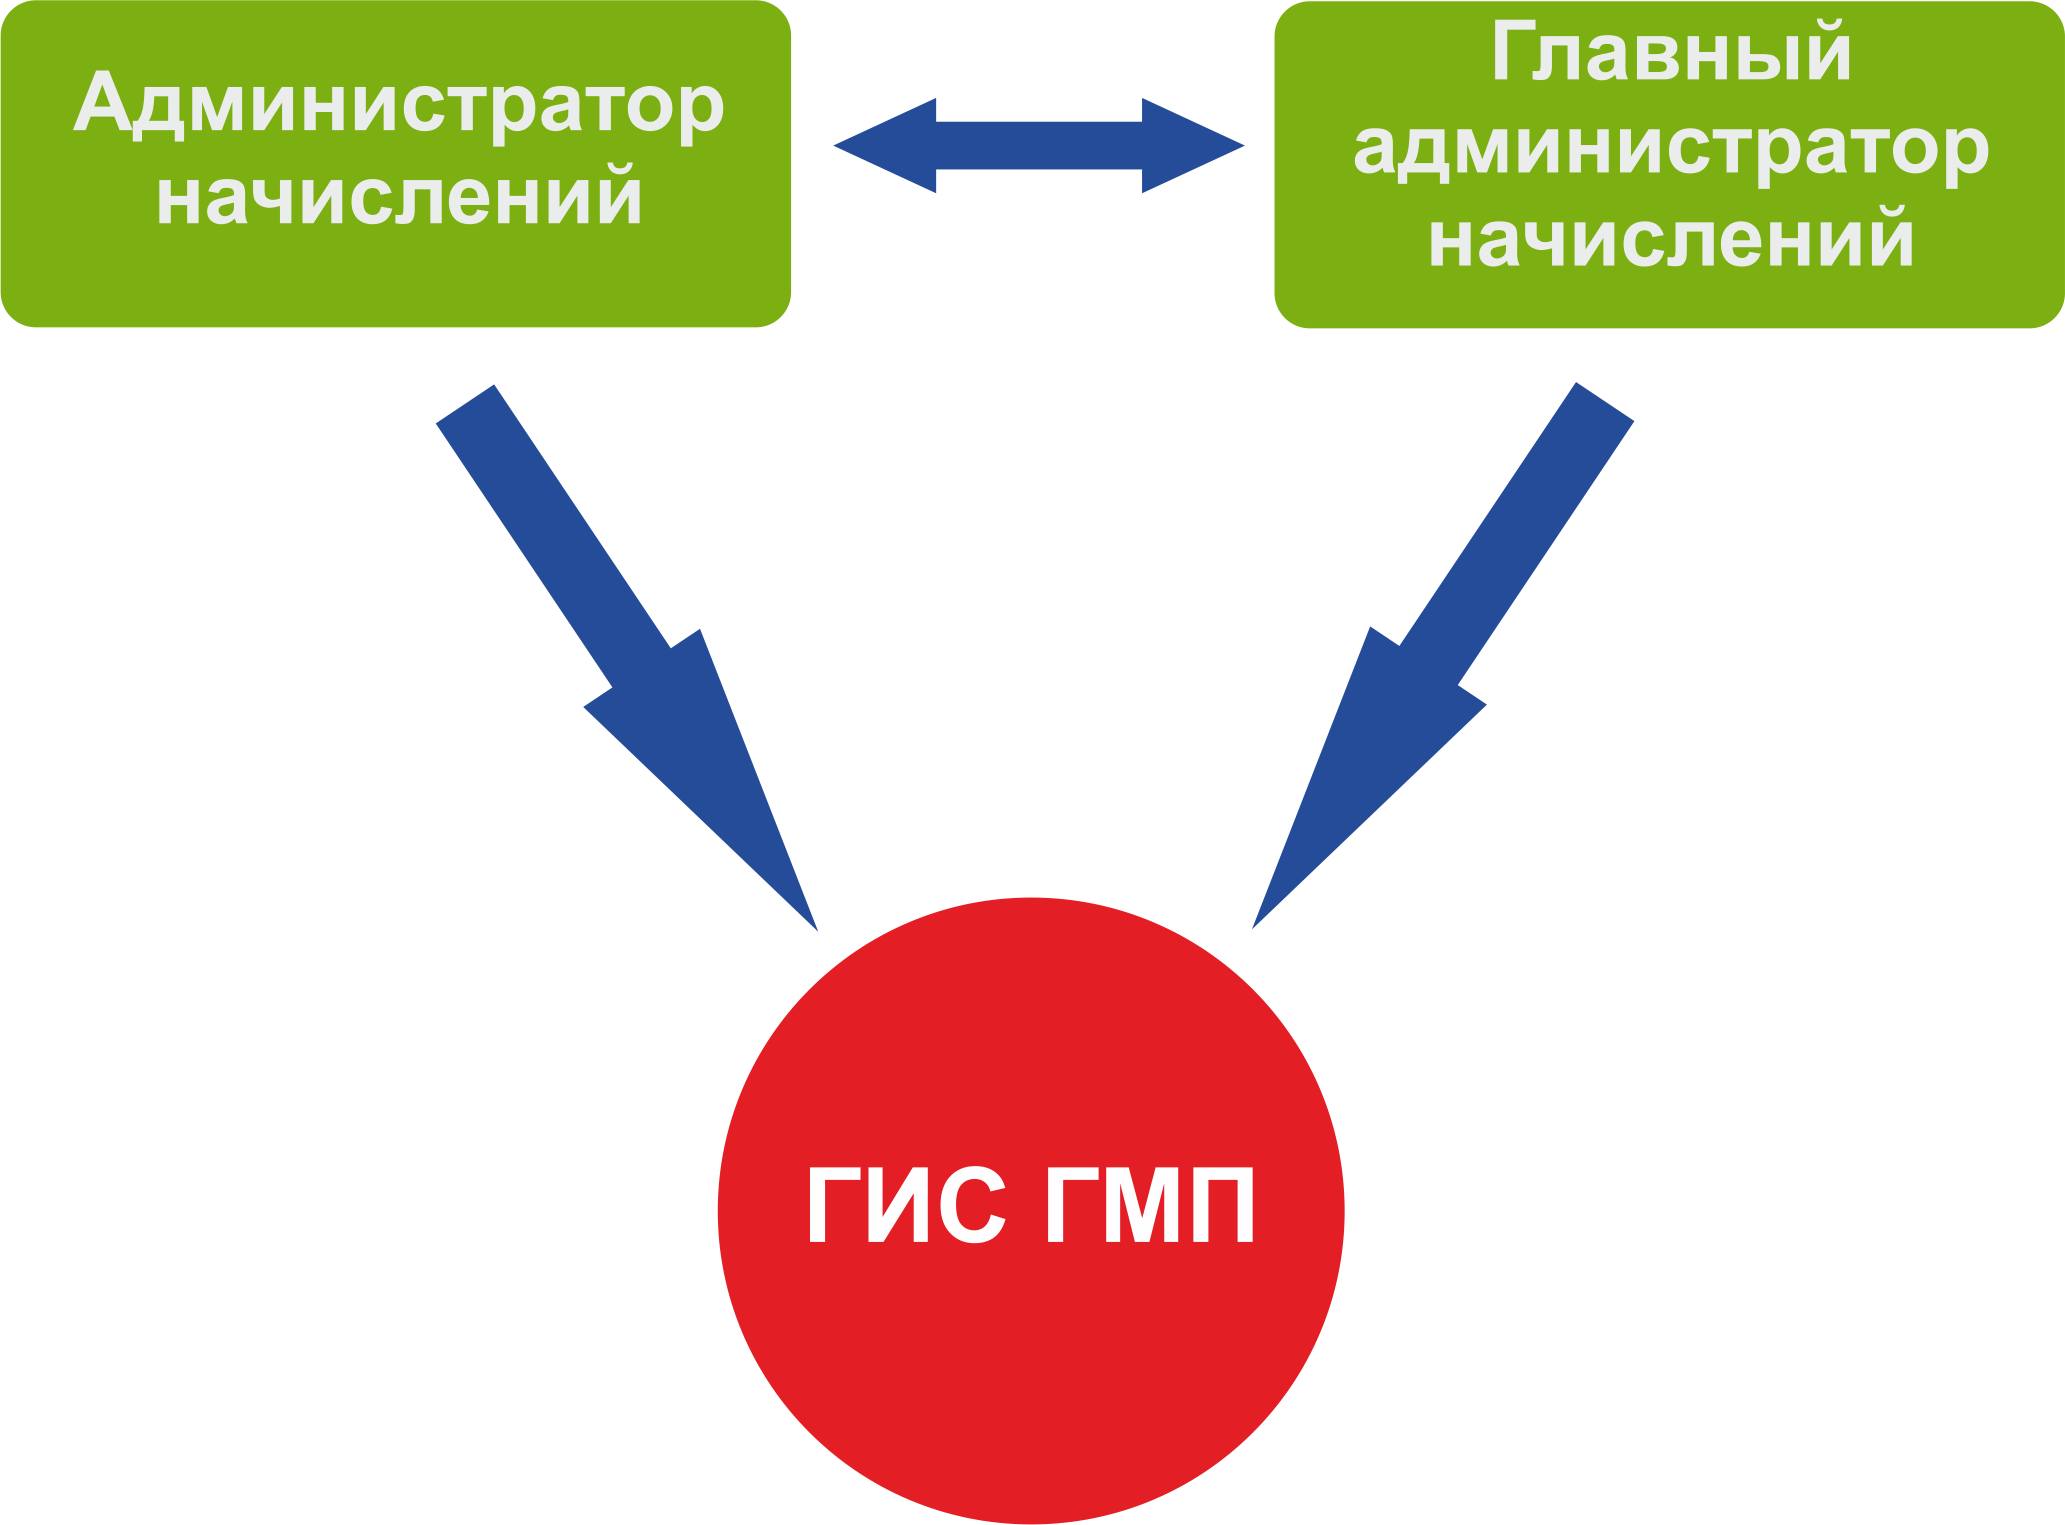 Схема взаимодействия Администраторов начислений и ГИС ГМП